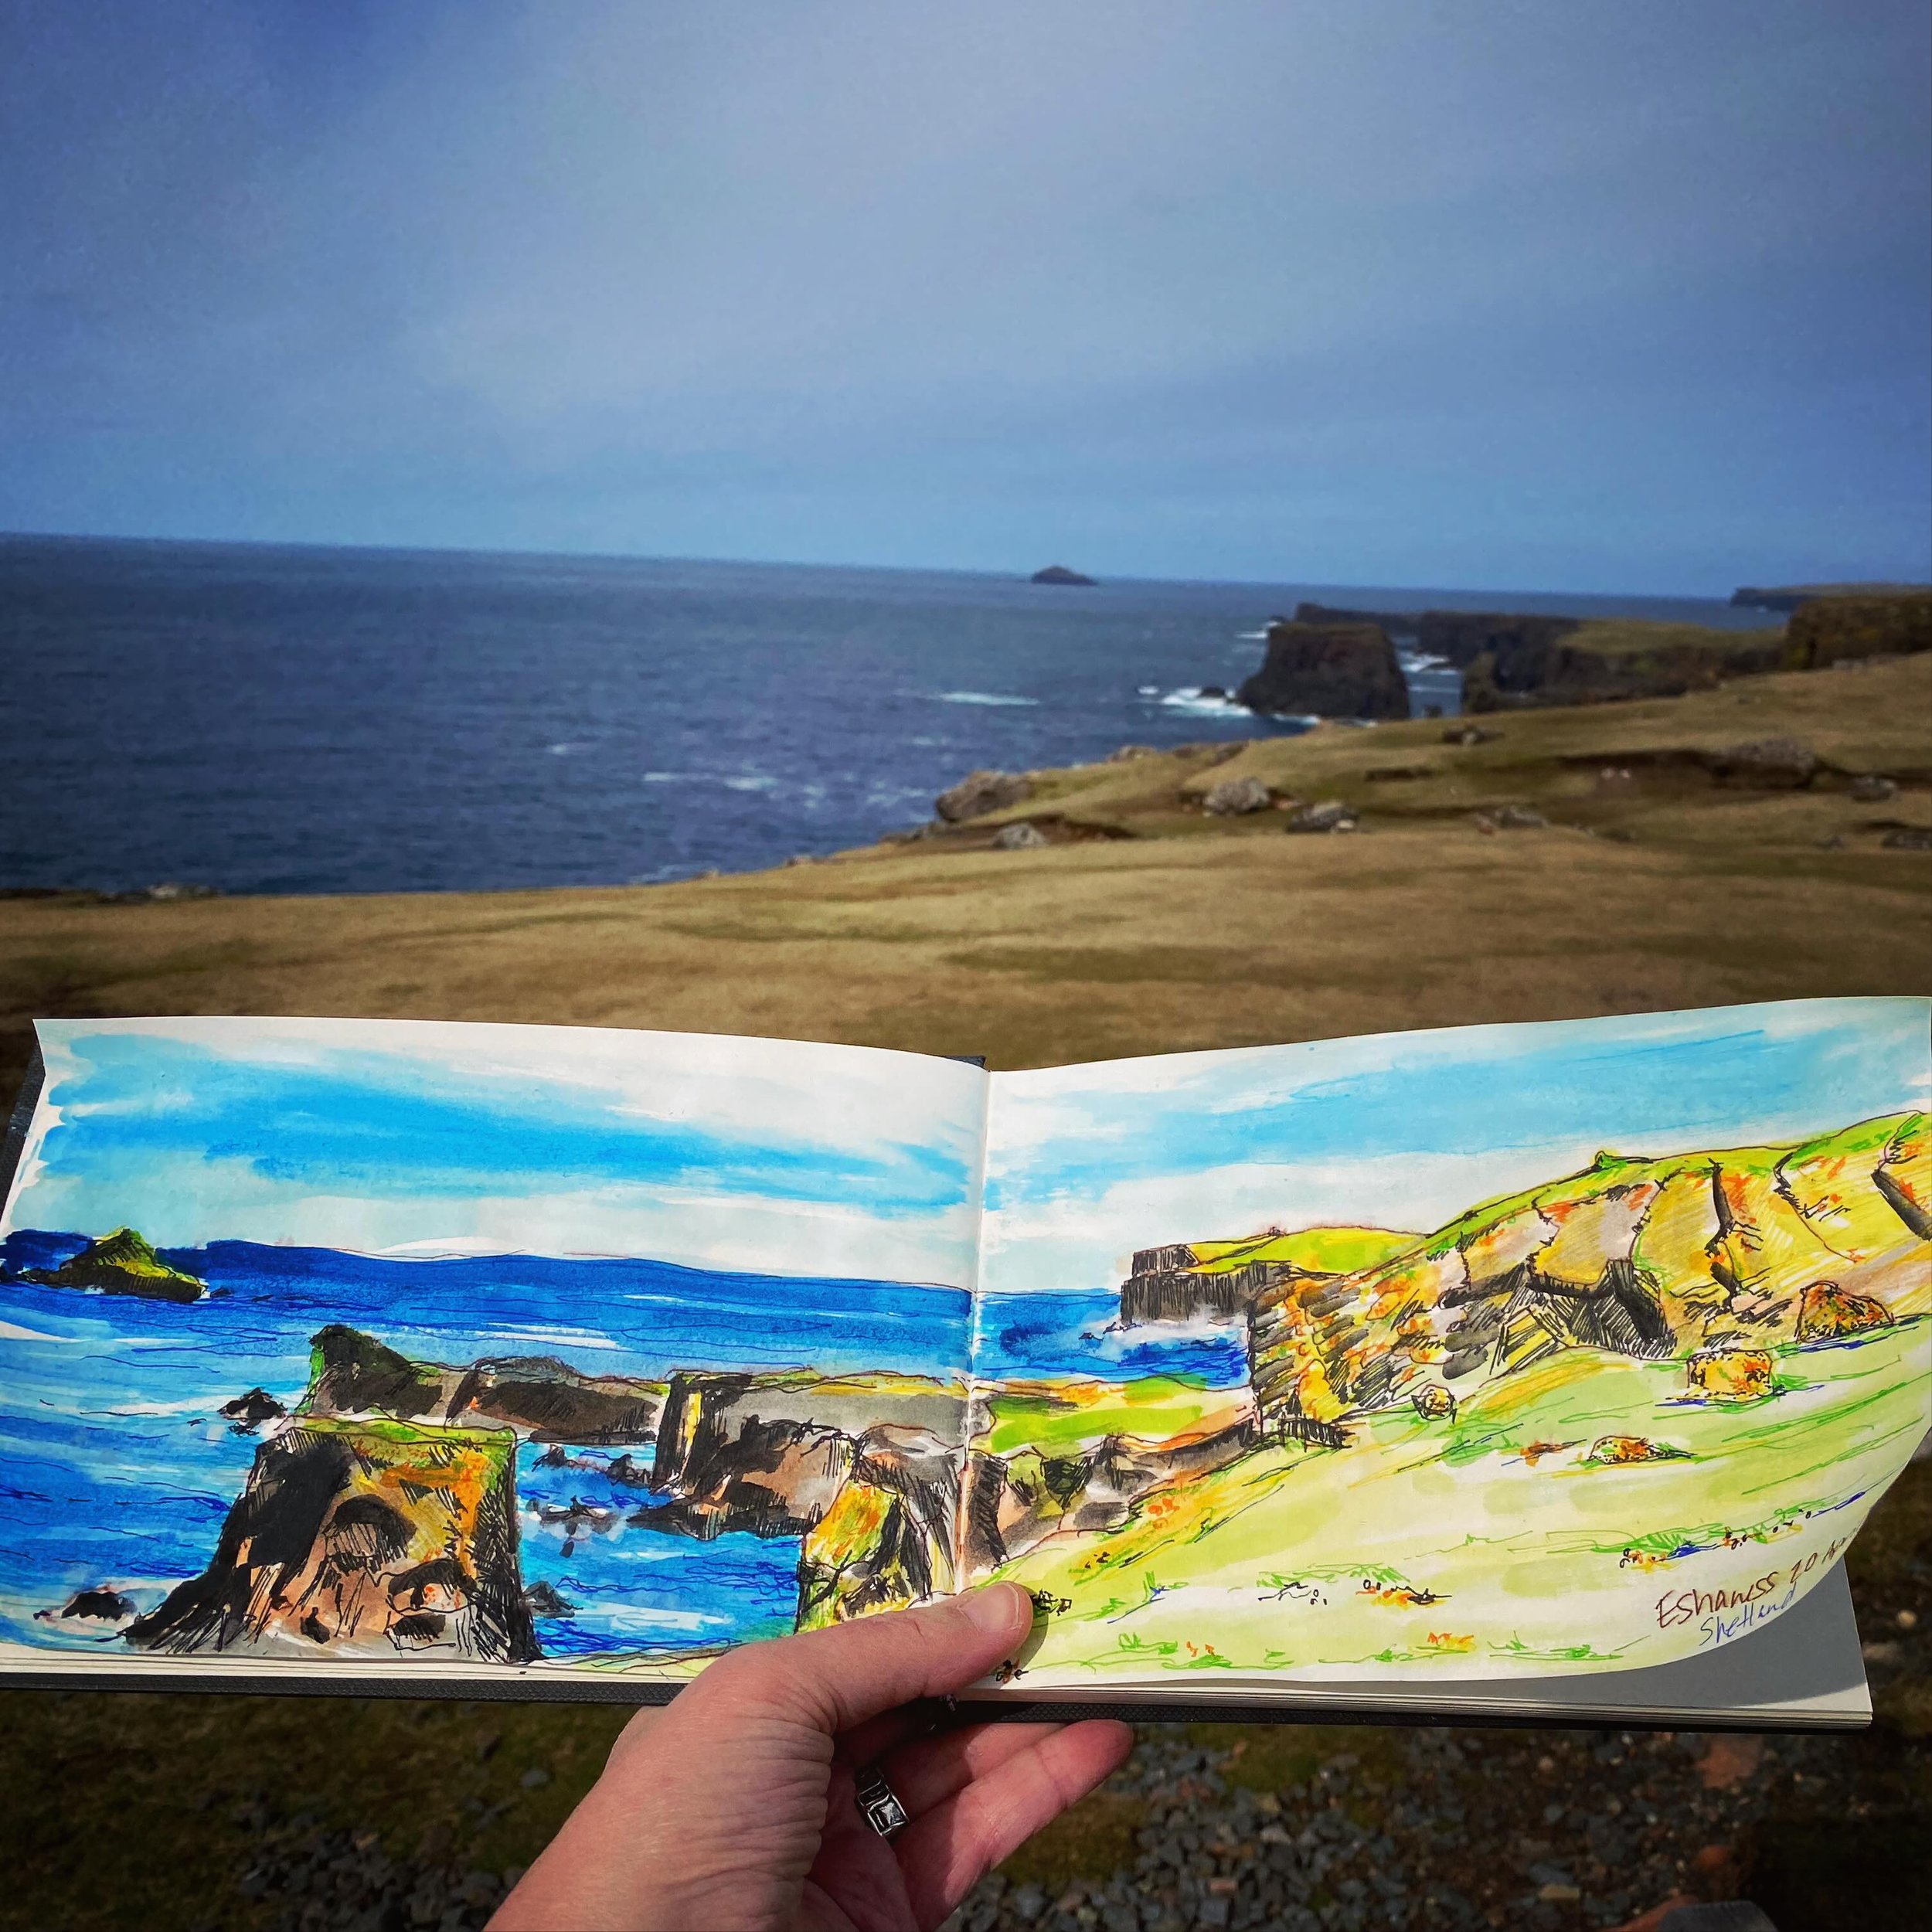 Sketching at Eshaness. #padeapix #eshaness #shetland #northernisles #watercolour #art #painting #sketching #sketchbook